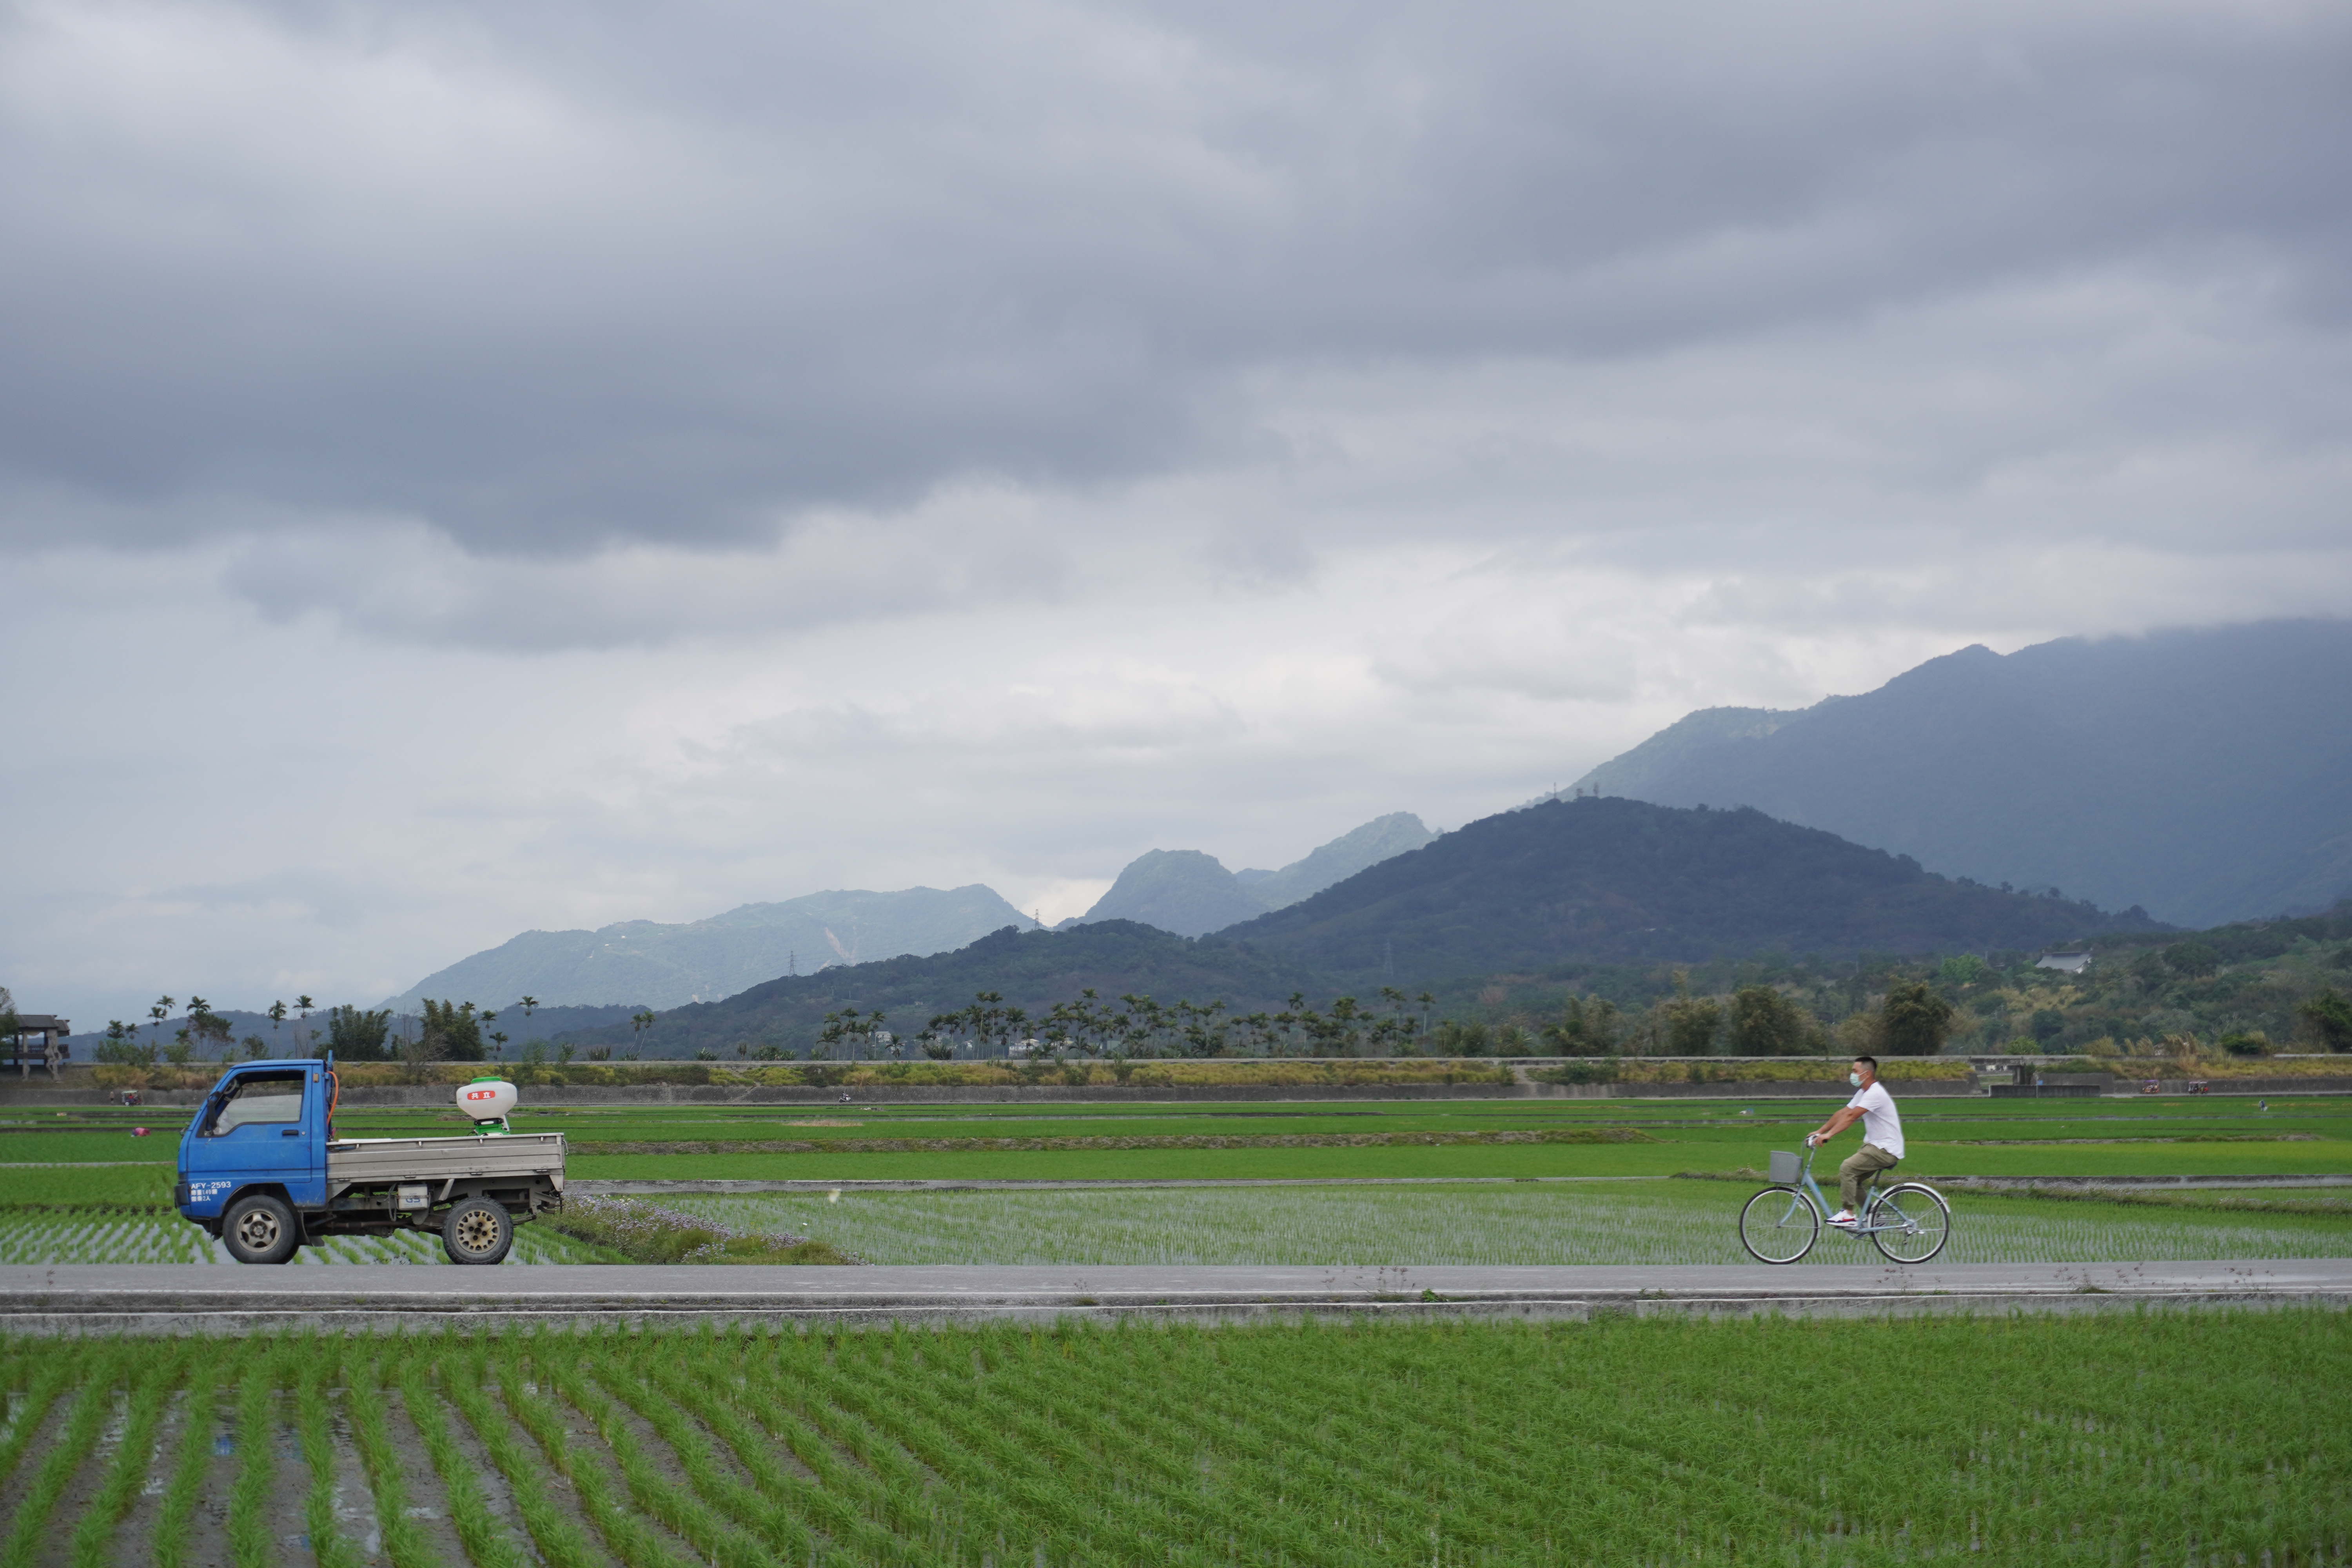 Rice field in Taiwan